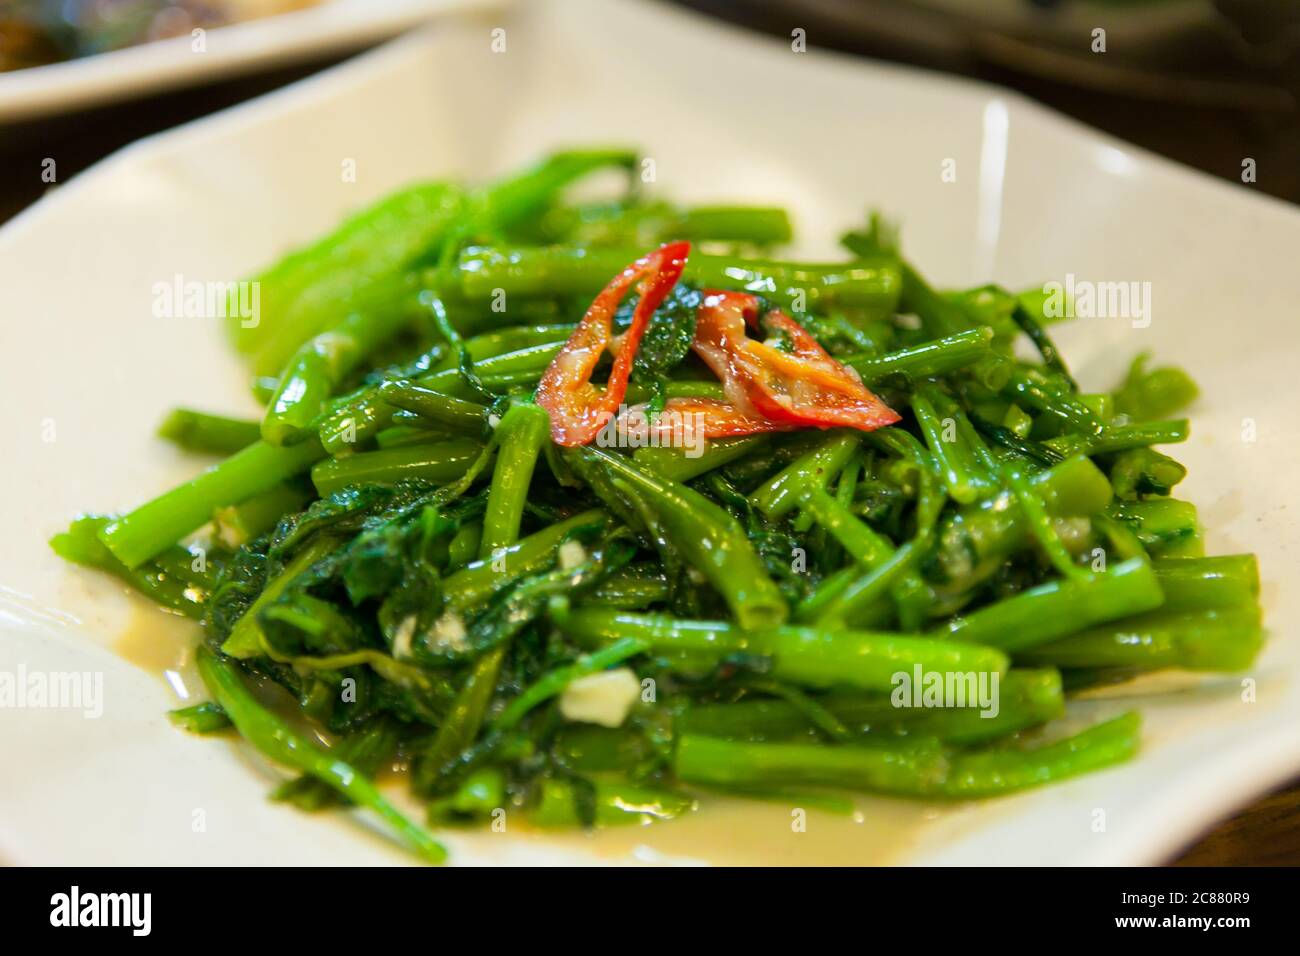 Verdure fritte con peperoncino rosso sulla parte superiore, un piatto di ordine comune quando si mangia al ristorante/stalla Zi Char a Singapore o Hong Kong. Foto Stock